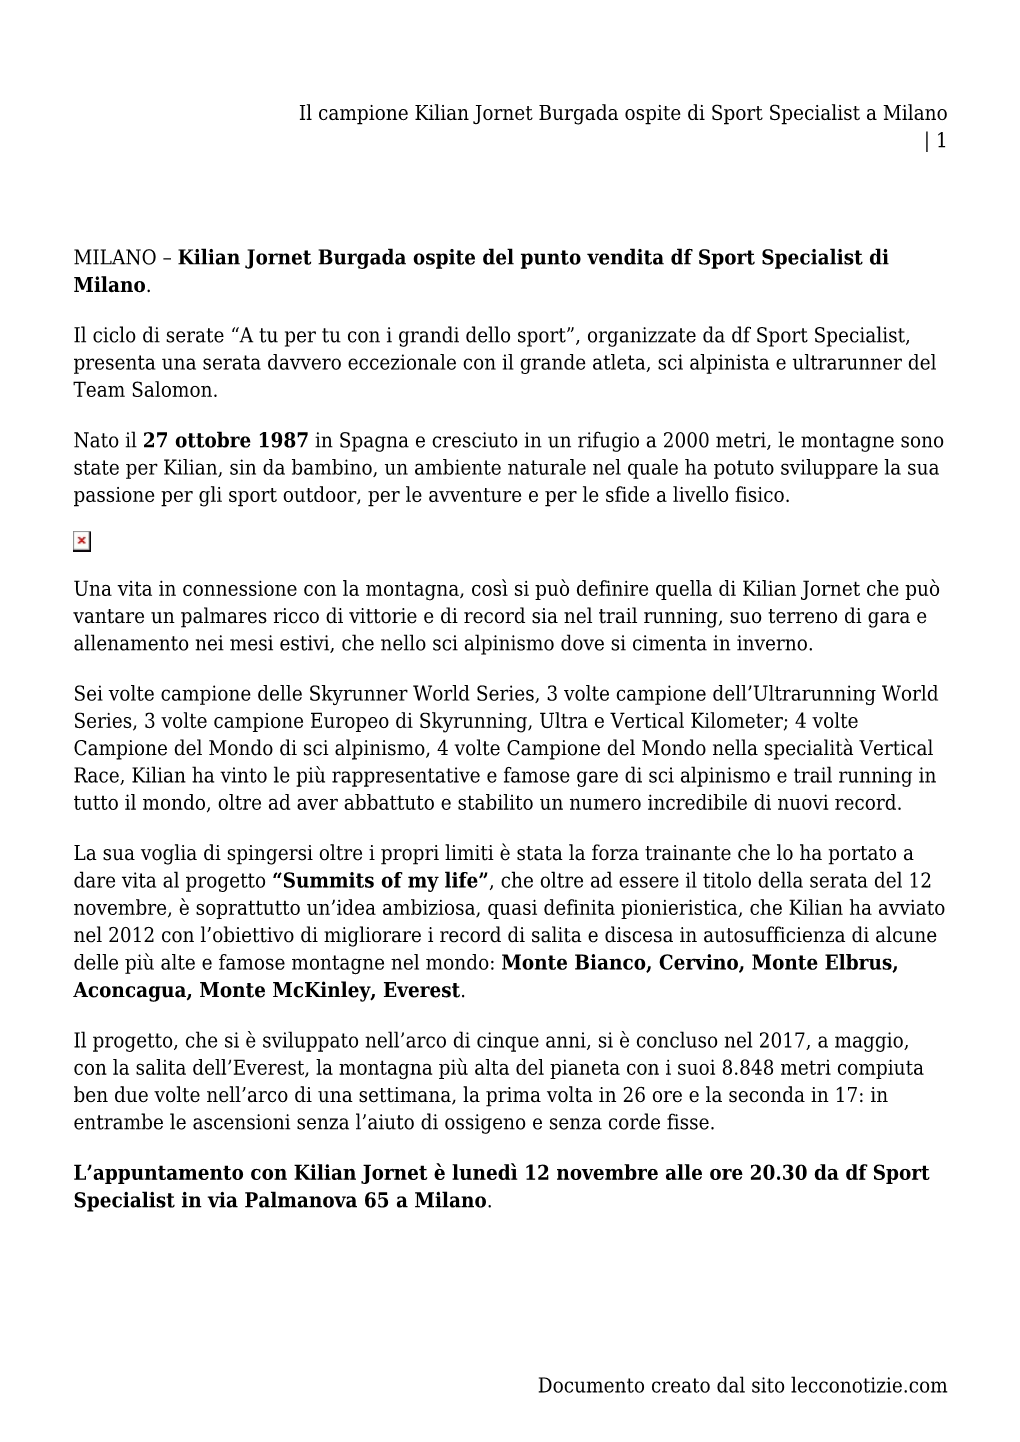 Il Campione Kilian Jornet Burgada Ospite Di Sport Specialist a Milano | 1